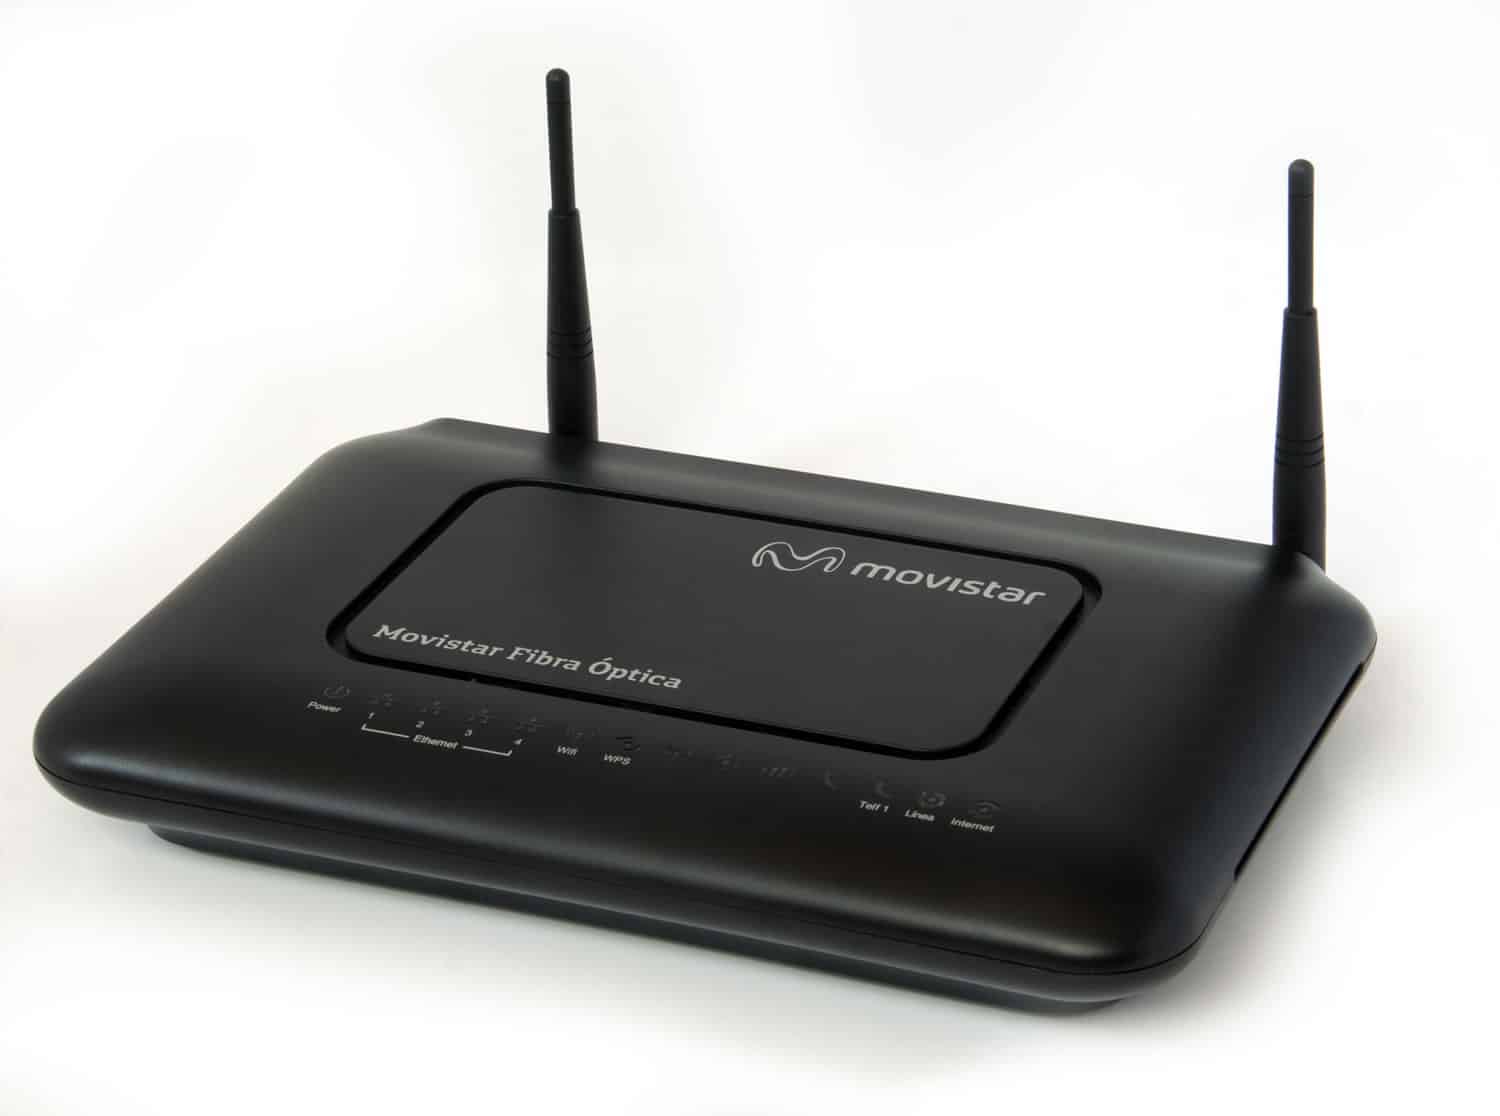 ¿Qué harán empresas como VTR o Movistar con KRACK? la falla la seguridad del Wi-Fi